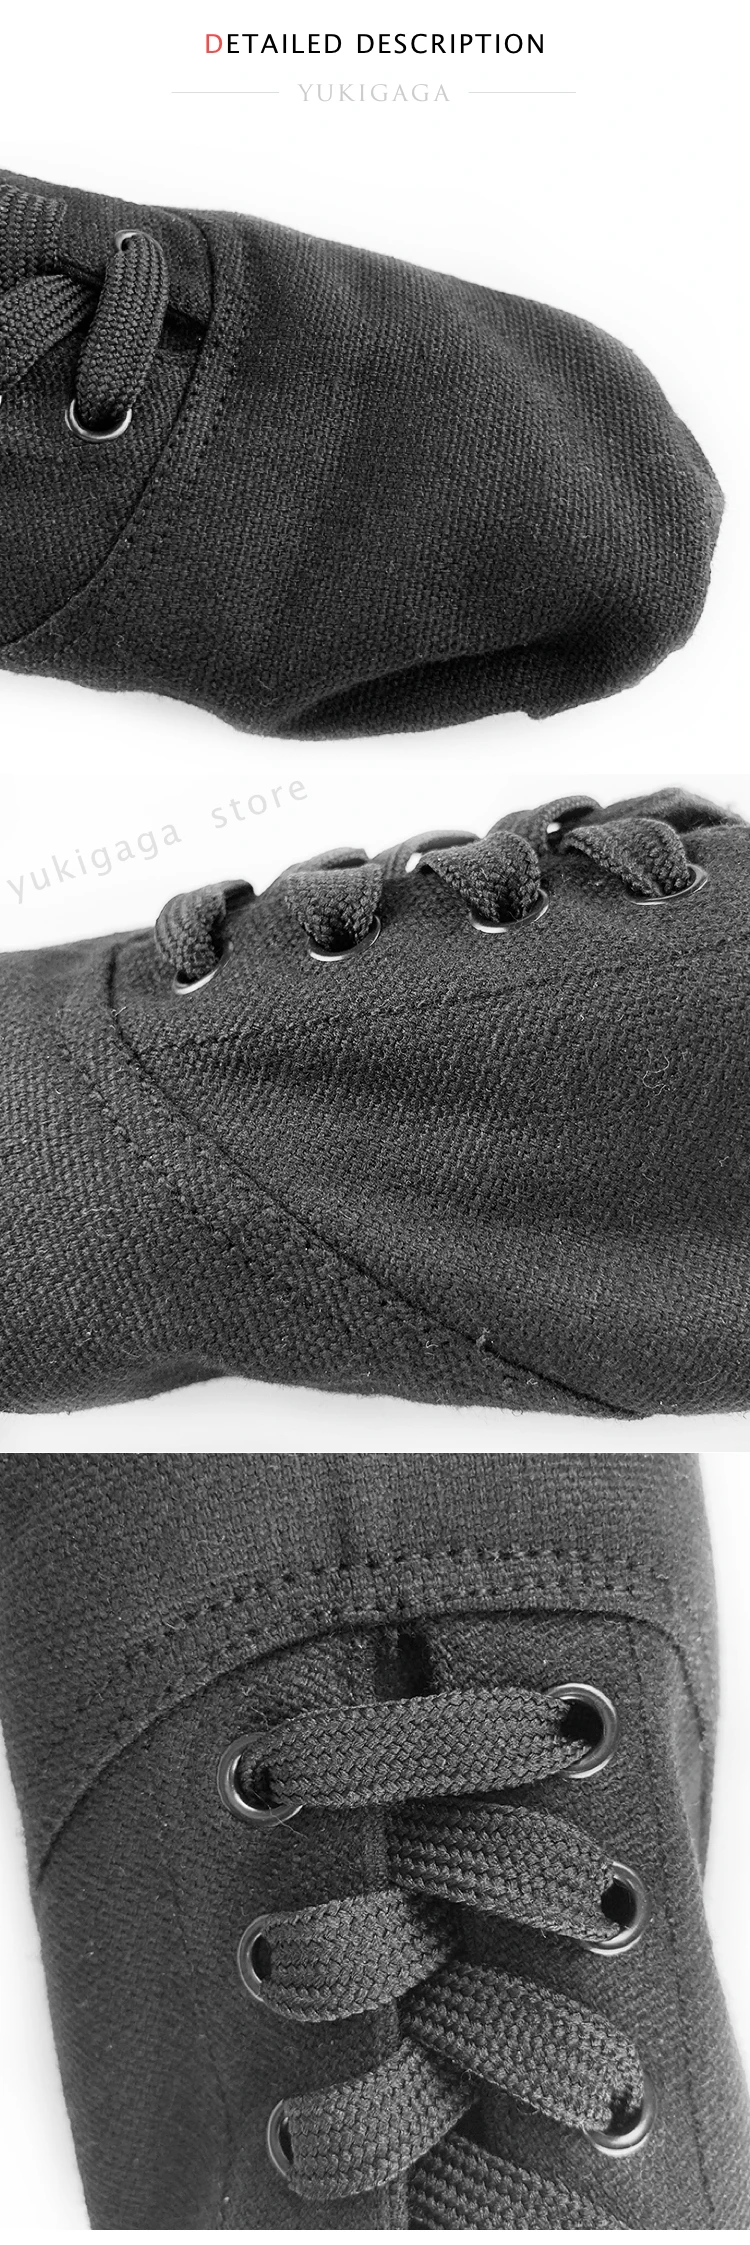 Качественные танцевальные туфли для джаза мягкие балетные Танцевальные Кроссовки для джаза черные цвета загара для мужчин и женщин балет танец танцор обувь